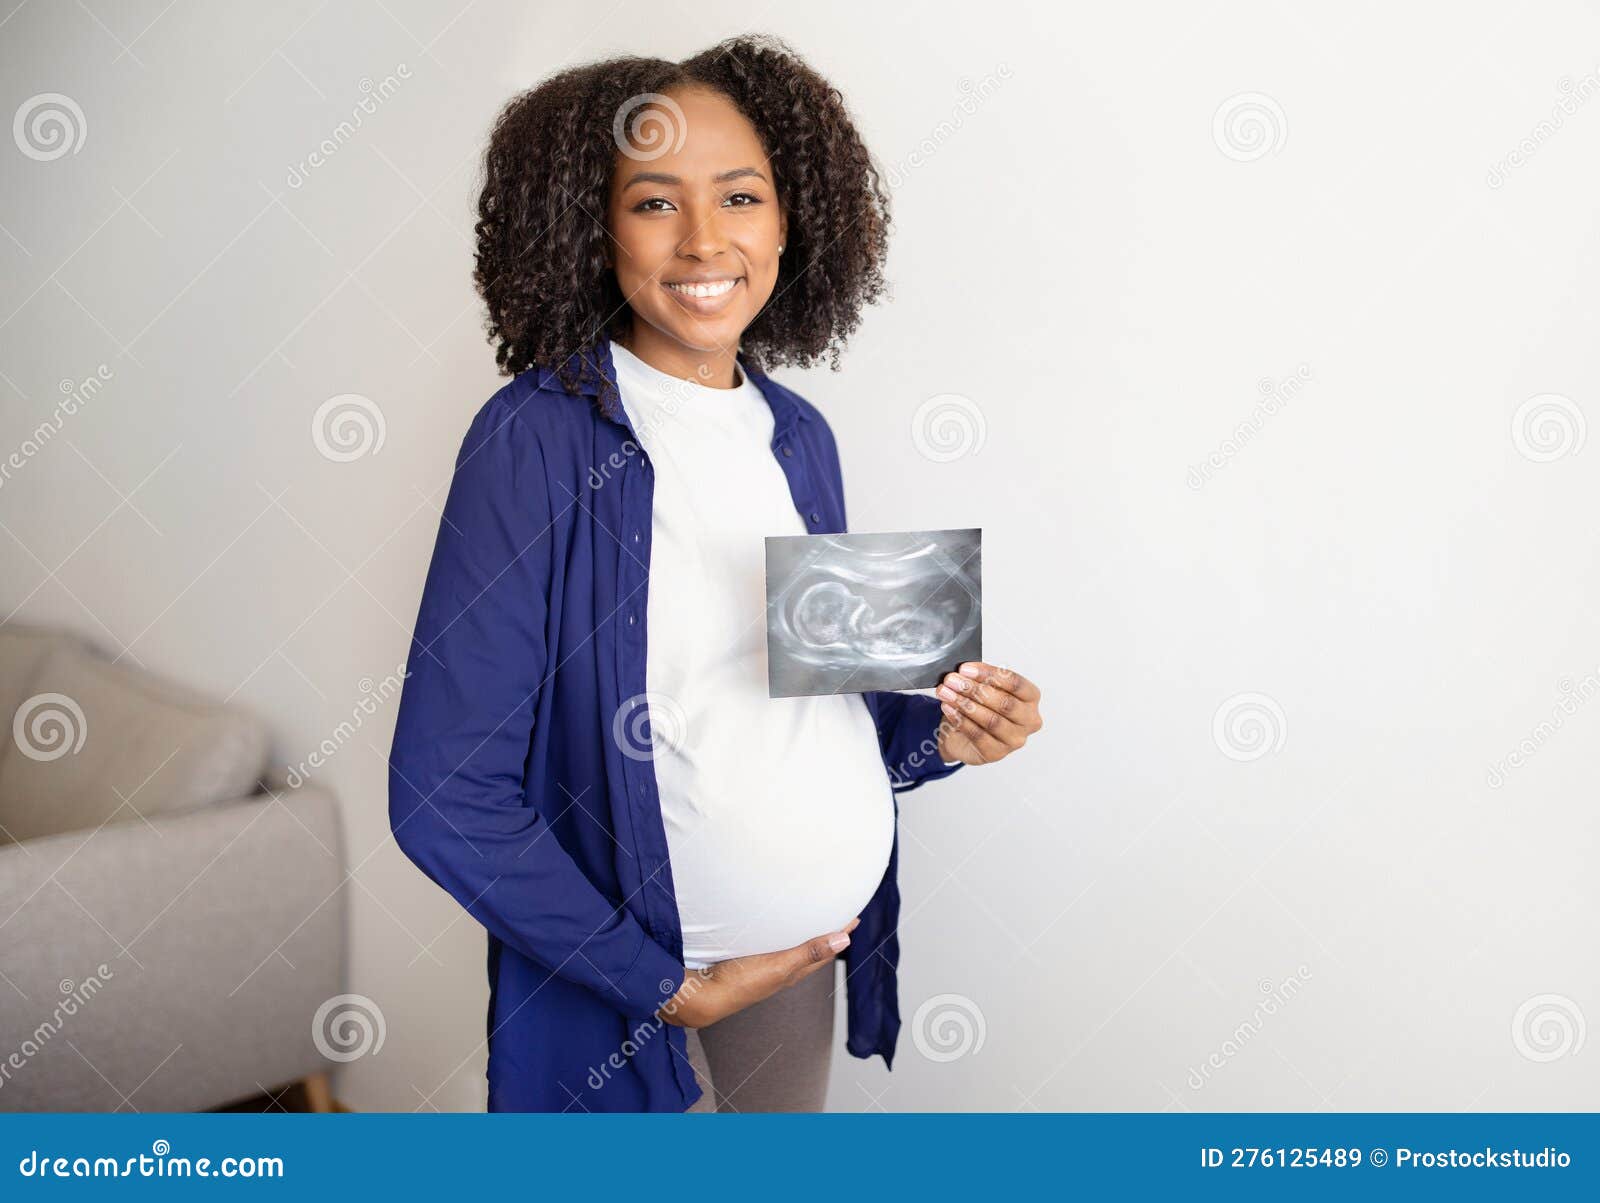 https://thumbs.dreamstime.com/z/jeune-afro-am%C3%A9ricaine-joyeuse-femme-enceinte-avec-le-ventre-dans-un-cadre-d%C3%A9contract%C3%A9-montrer-l-%C3%A9chographie-du-b%C3%A9b%C3%A9-%C3%A0-276125489.jpg